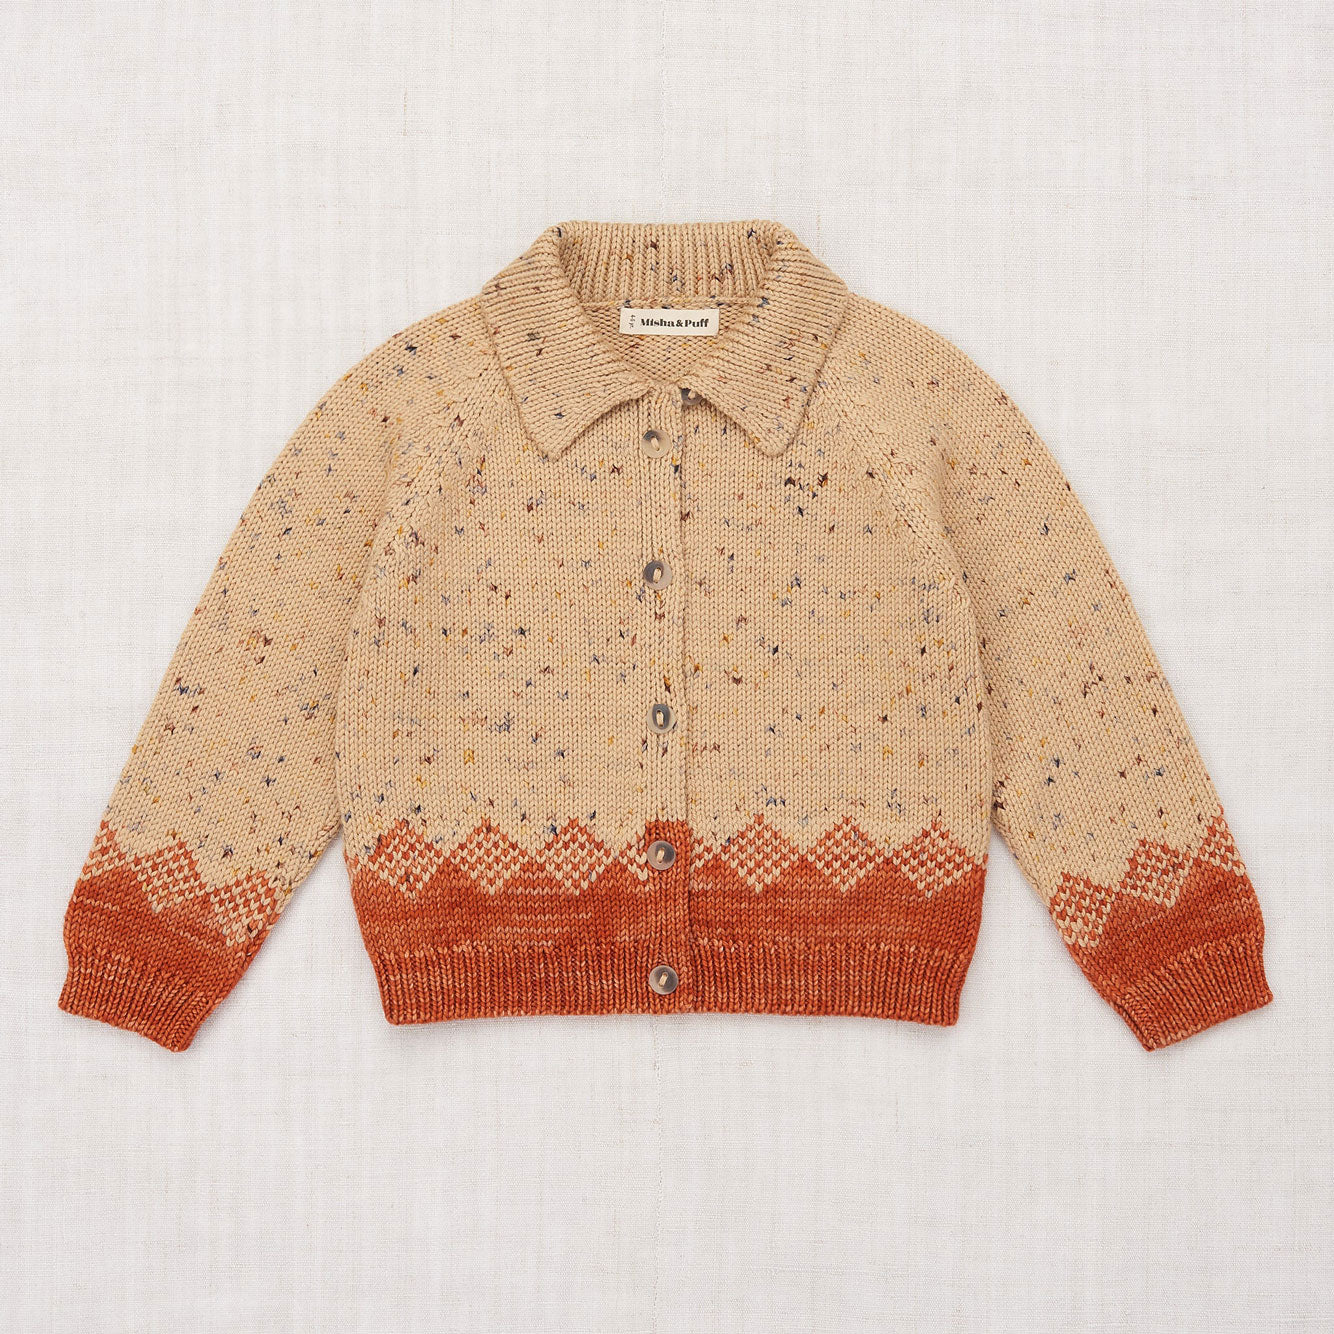 日本盤misha & puff Pinecone Confetti Sweater トップス